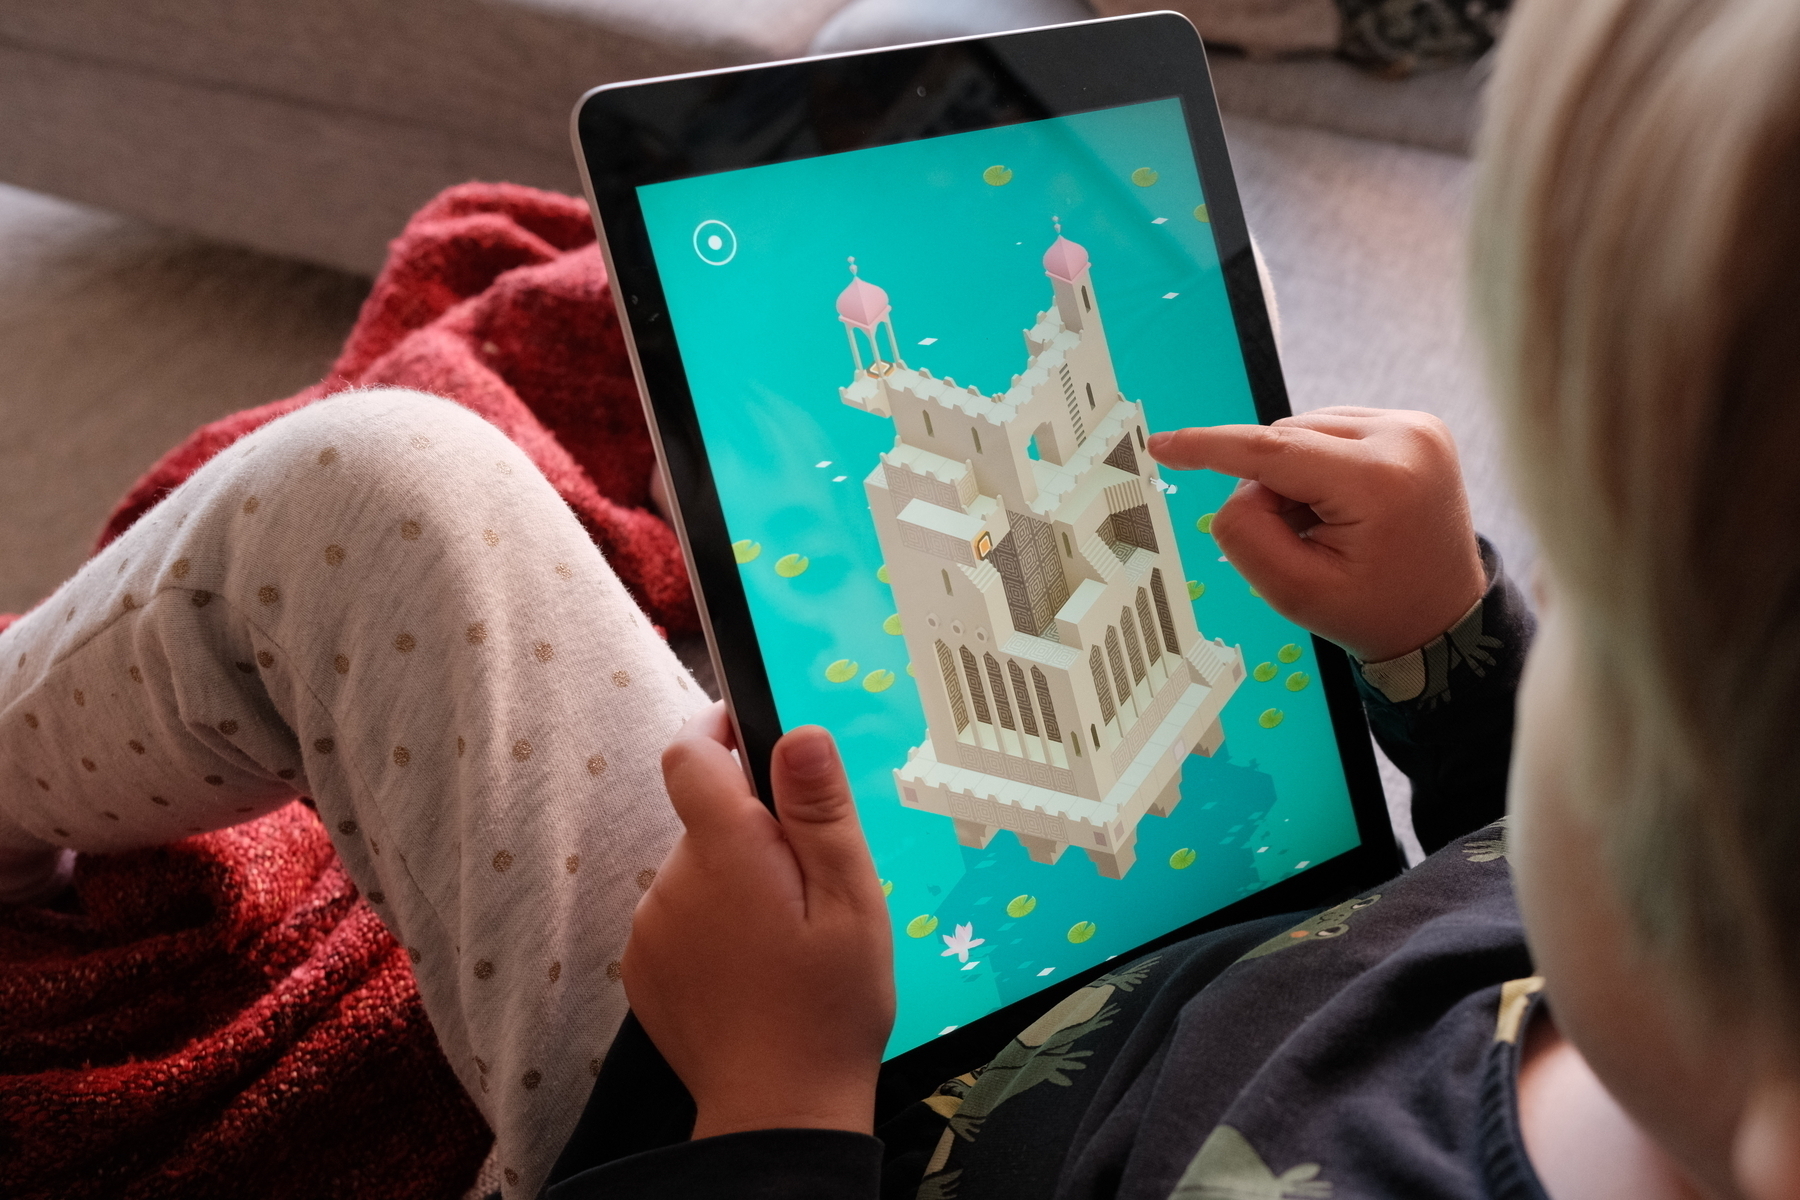 Pojke som sitter med sin iPad och klurar i spelet Monument Valley